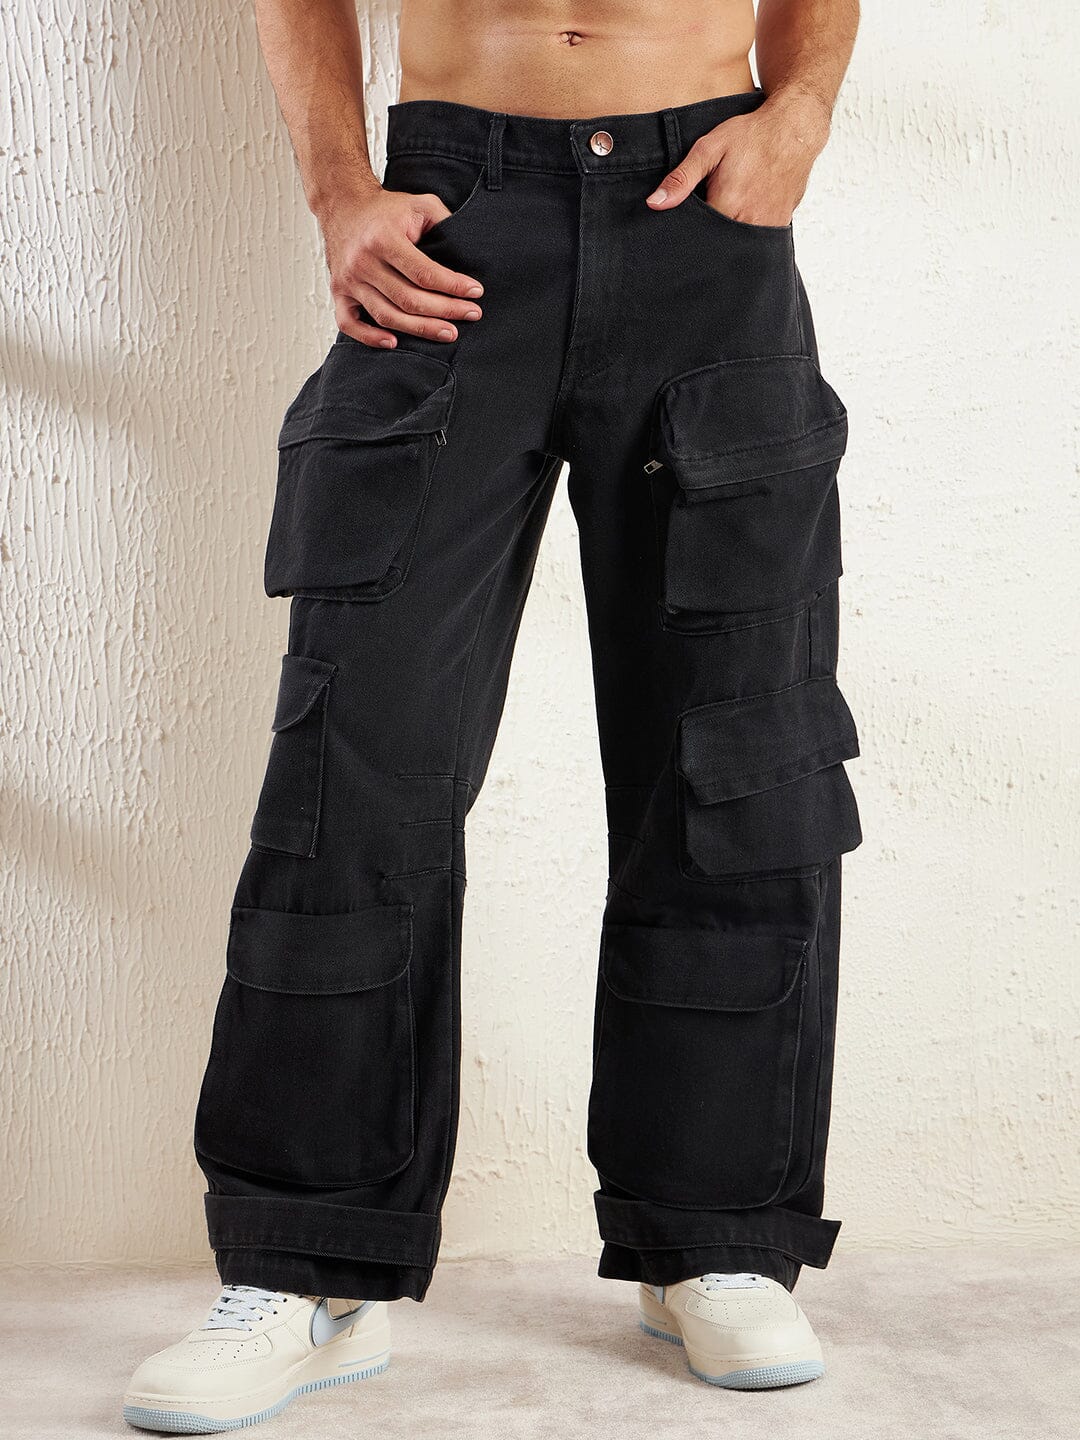 fvwitlyh Baggy Jeans Y2K Men's Blue Skinny Black Stretch Washed Slim Fit  Pencil Pants - Walmart.com